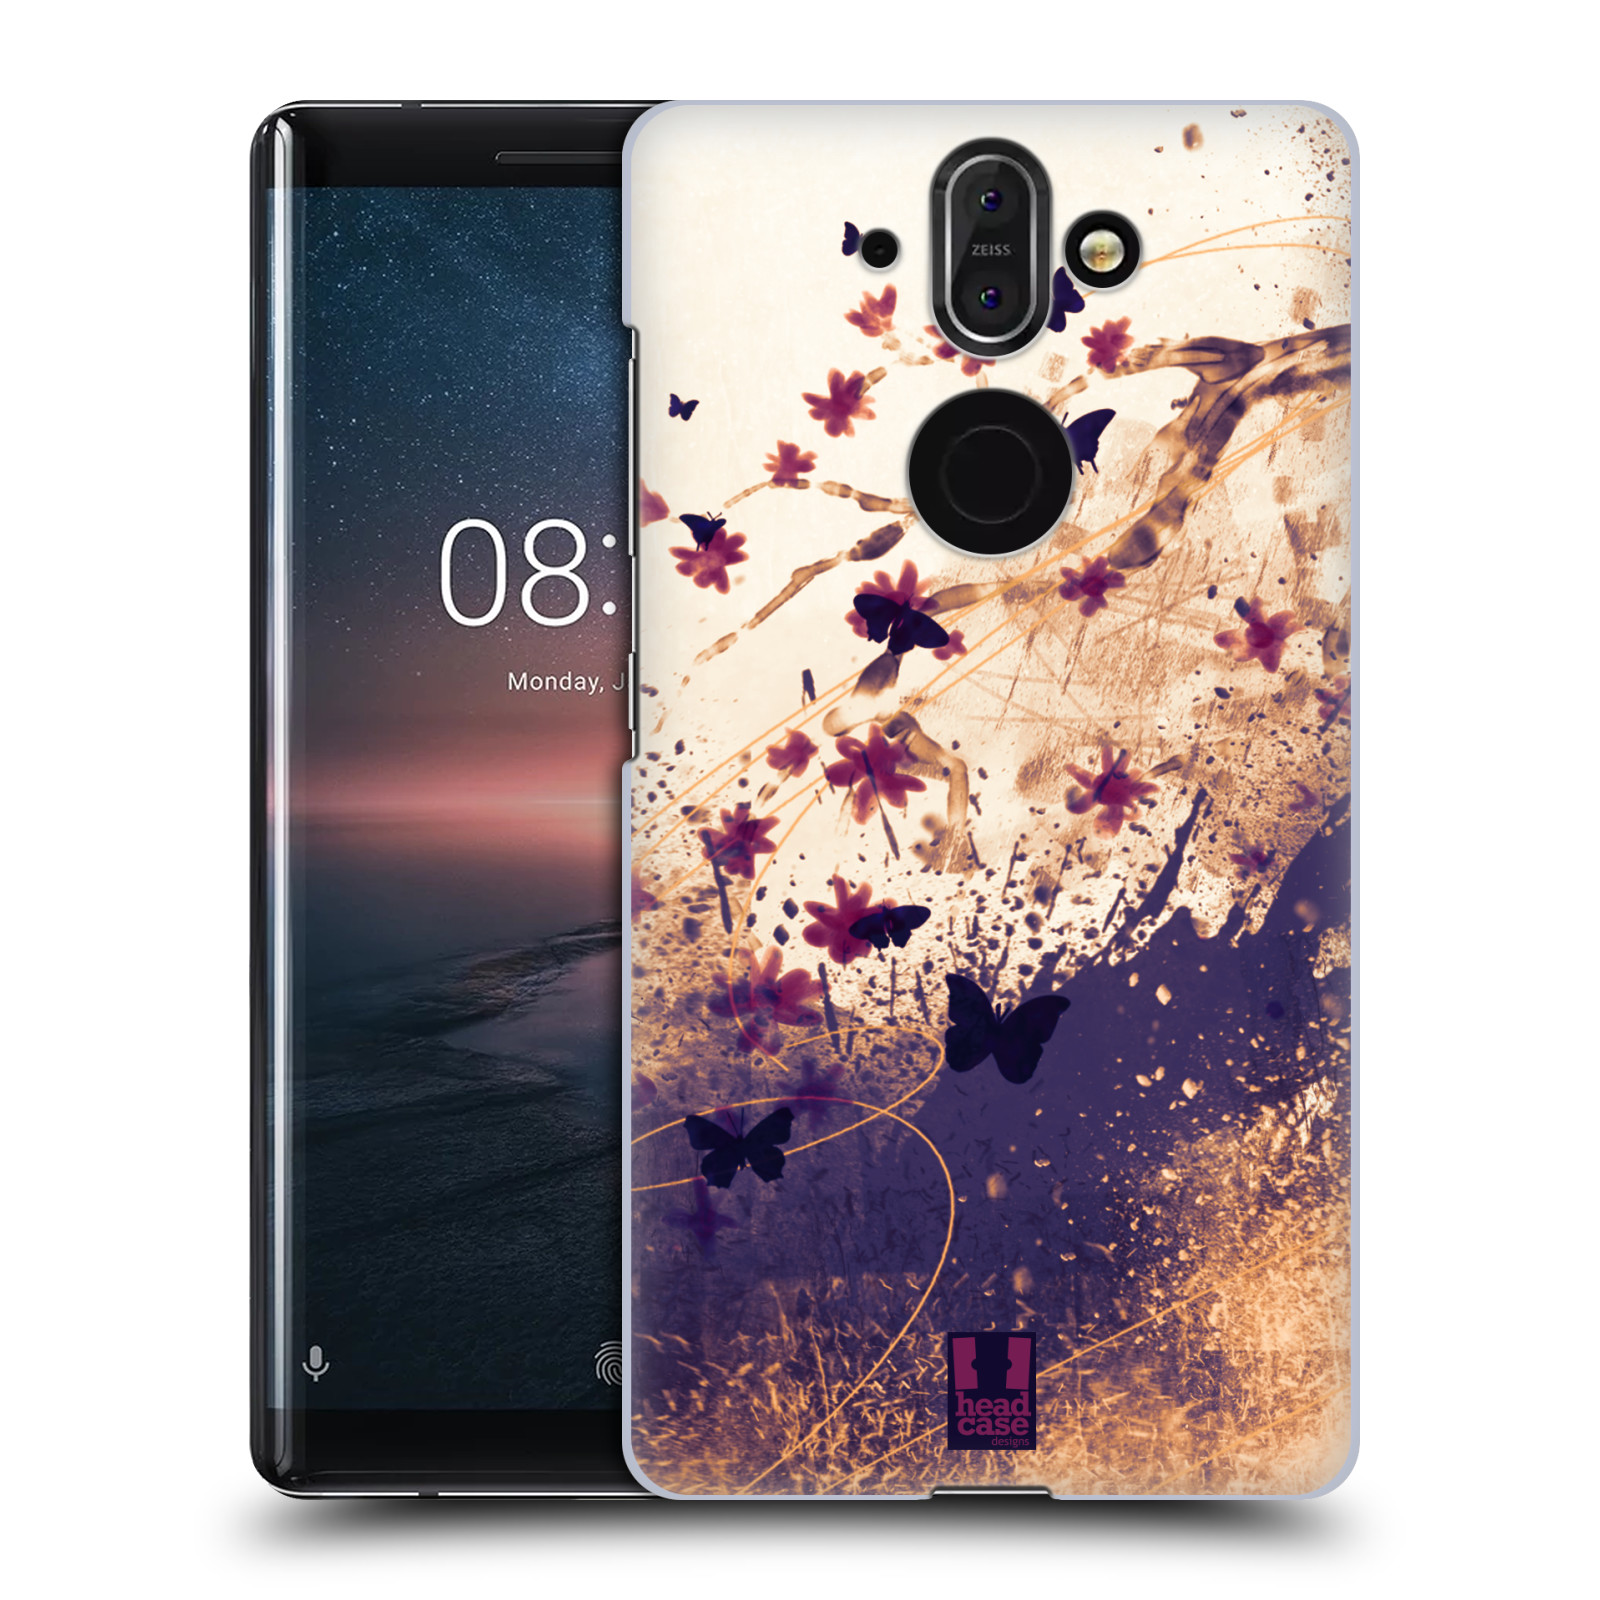 Zadní obal pro mobil Nokia 8 Sirocco - HEAD CASE - Barevné květy a motýlci